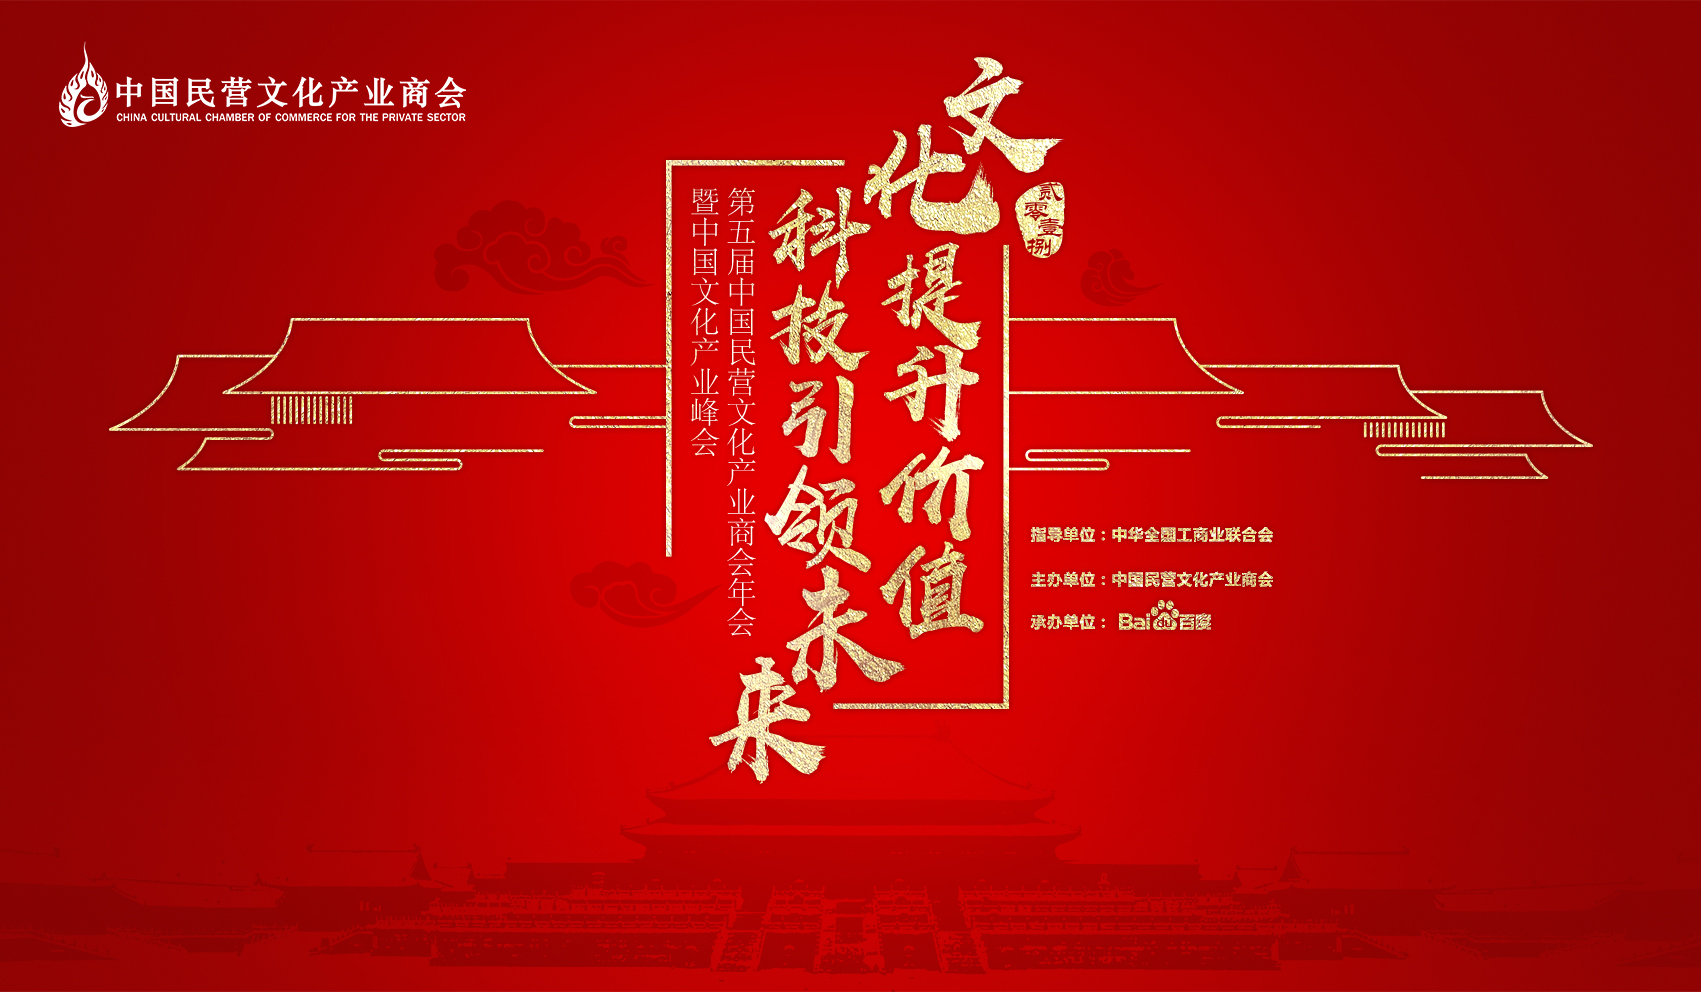 2018中國文化產業峰會(第五屆中國民營文化產業商會年會暨中國文化產業峰會)